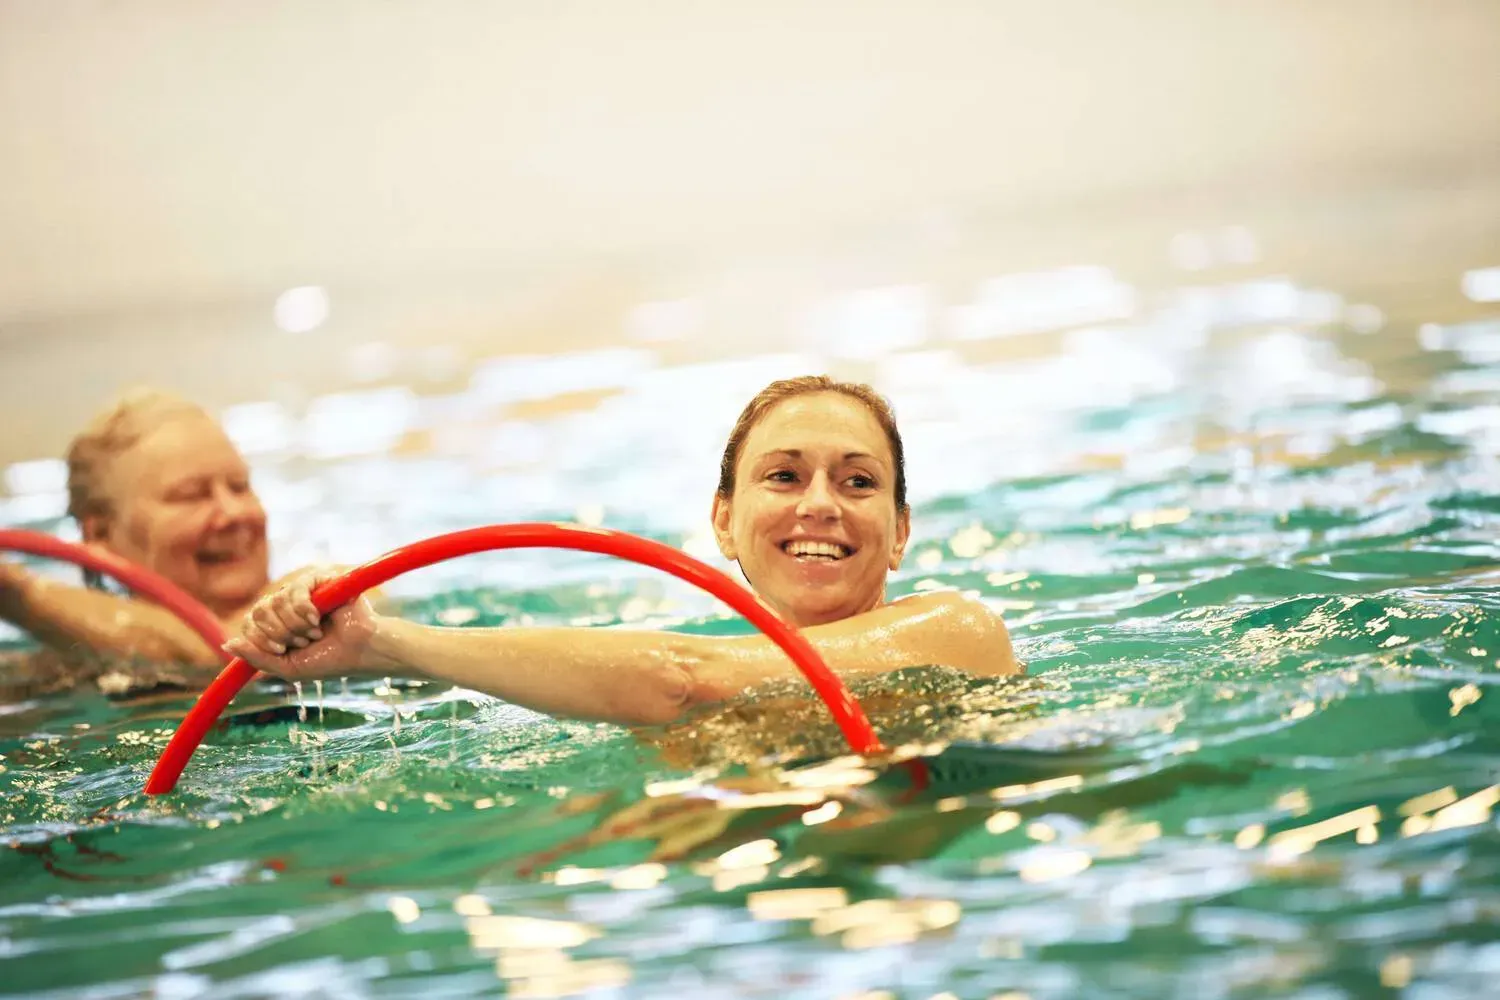 lachende vrouw met bril in het zwembad met blauw/gele gewichten in haar handen